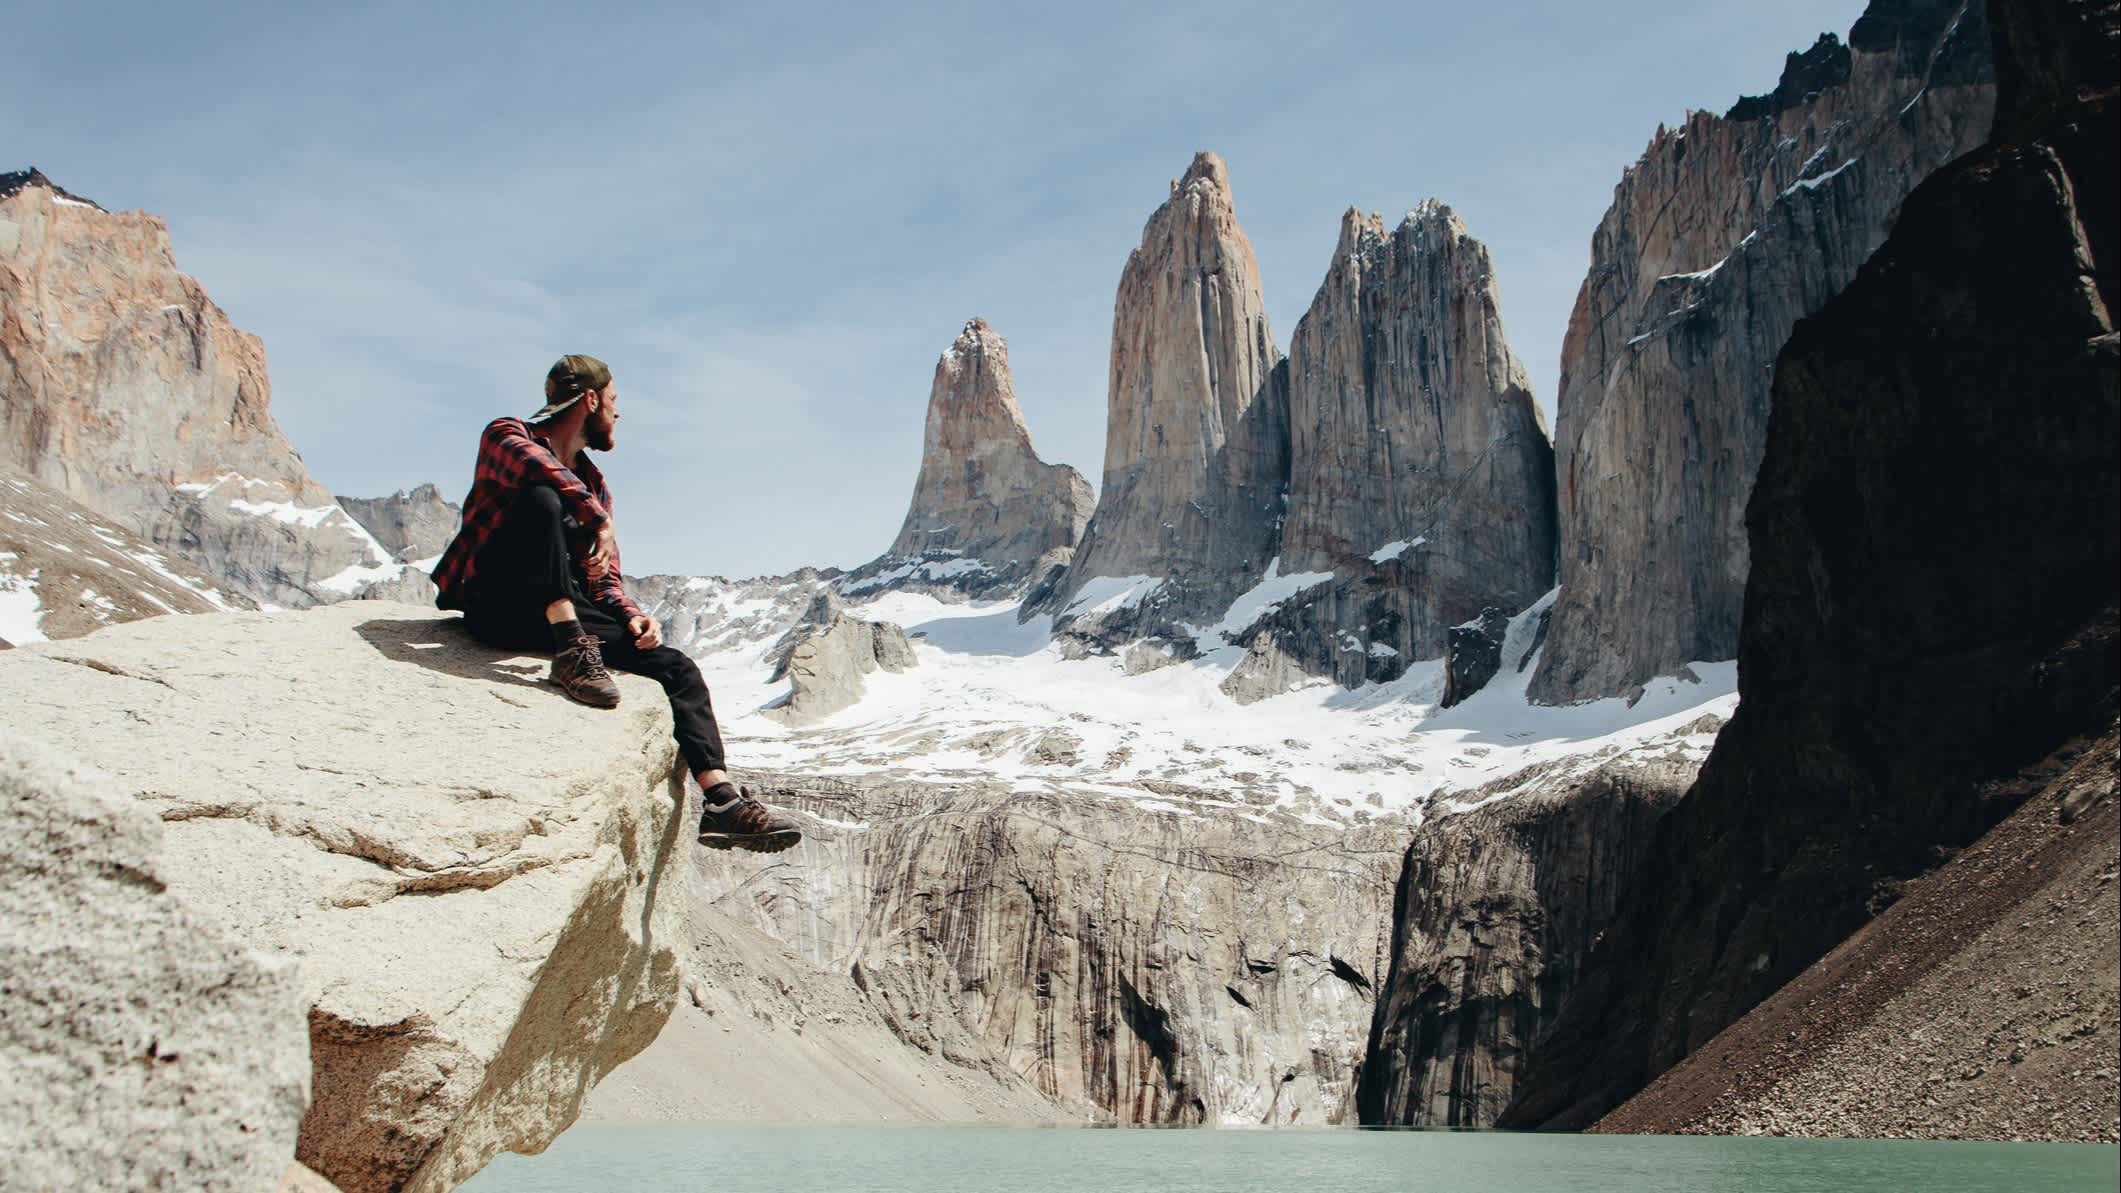 Un homme contemple la vue pittoresque du parc national Torres del Paine, Argentine.

